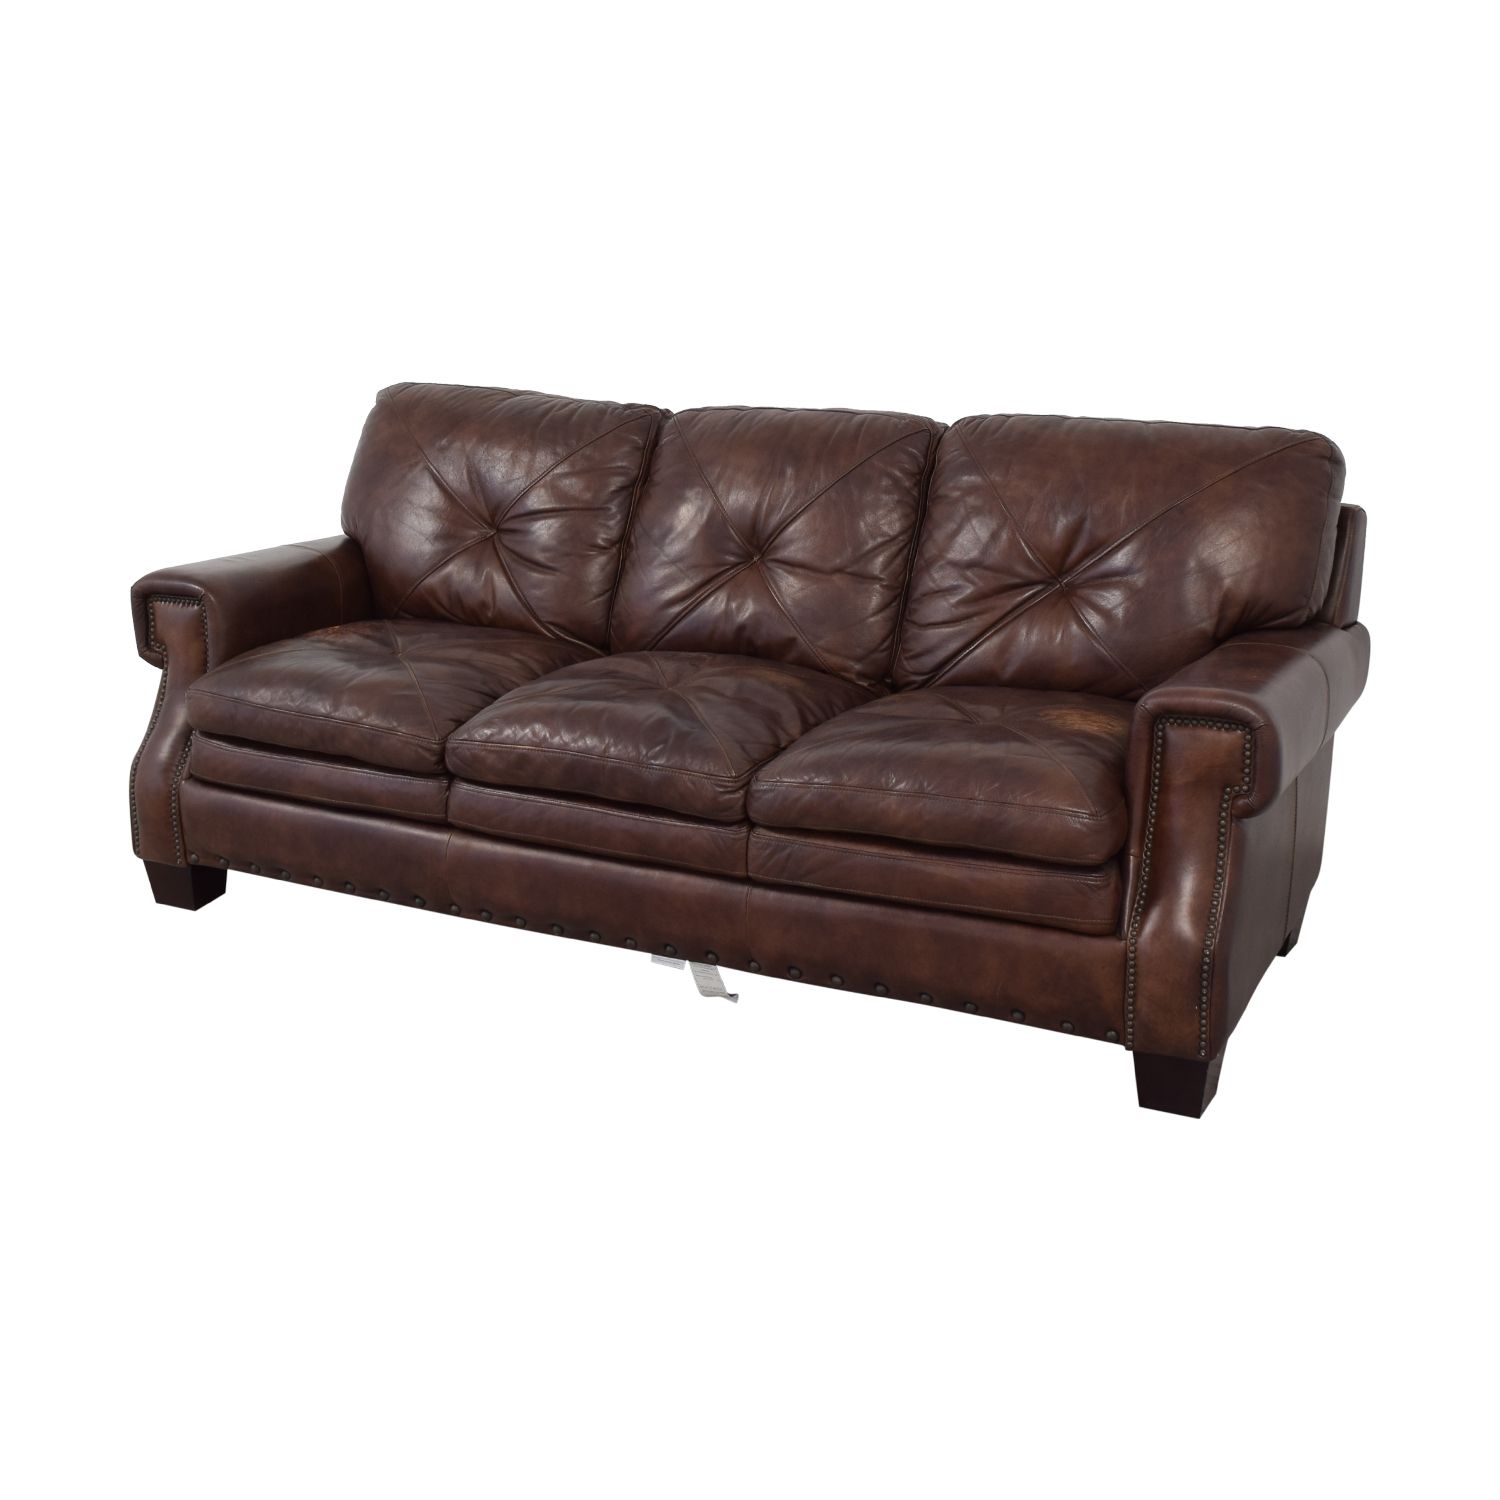 Bobs Furniture Leather Sofa : Trailblazer Gray Leather Regarding Trailblazer Gray Leather Power Reclining Sofas (View 5 of 15)